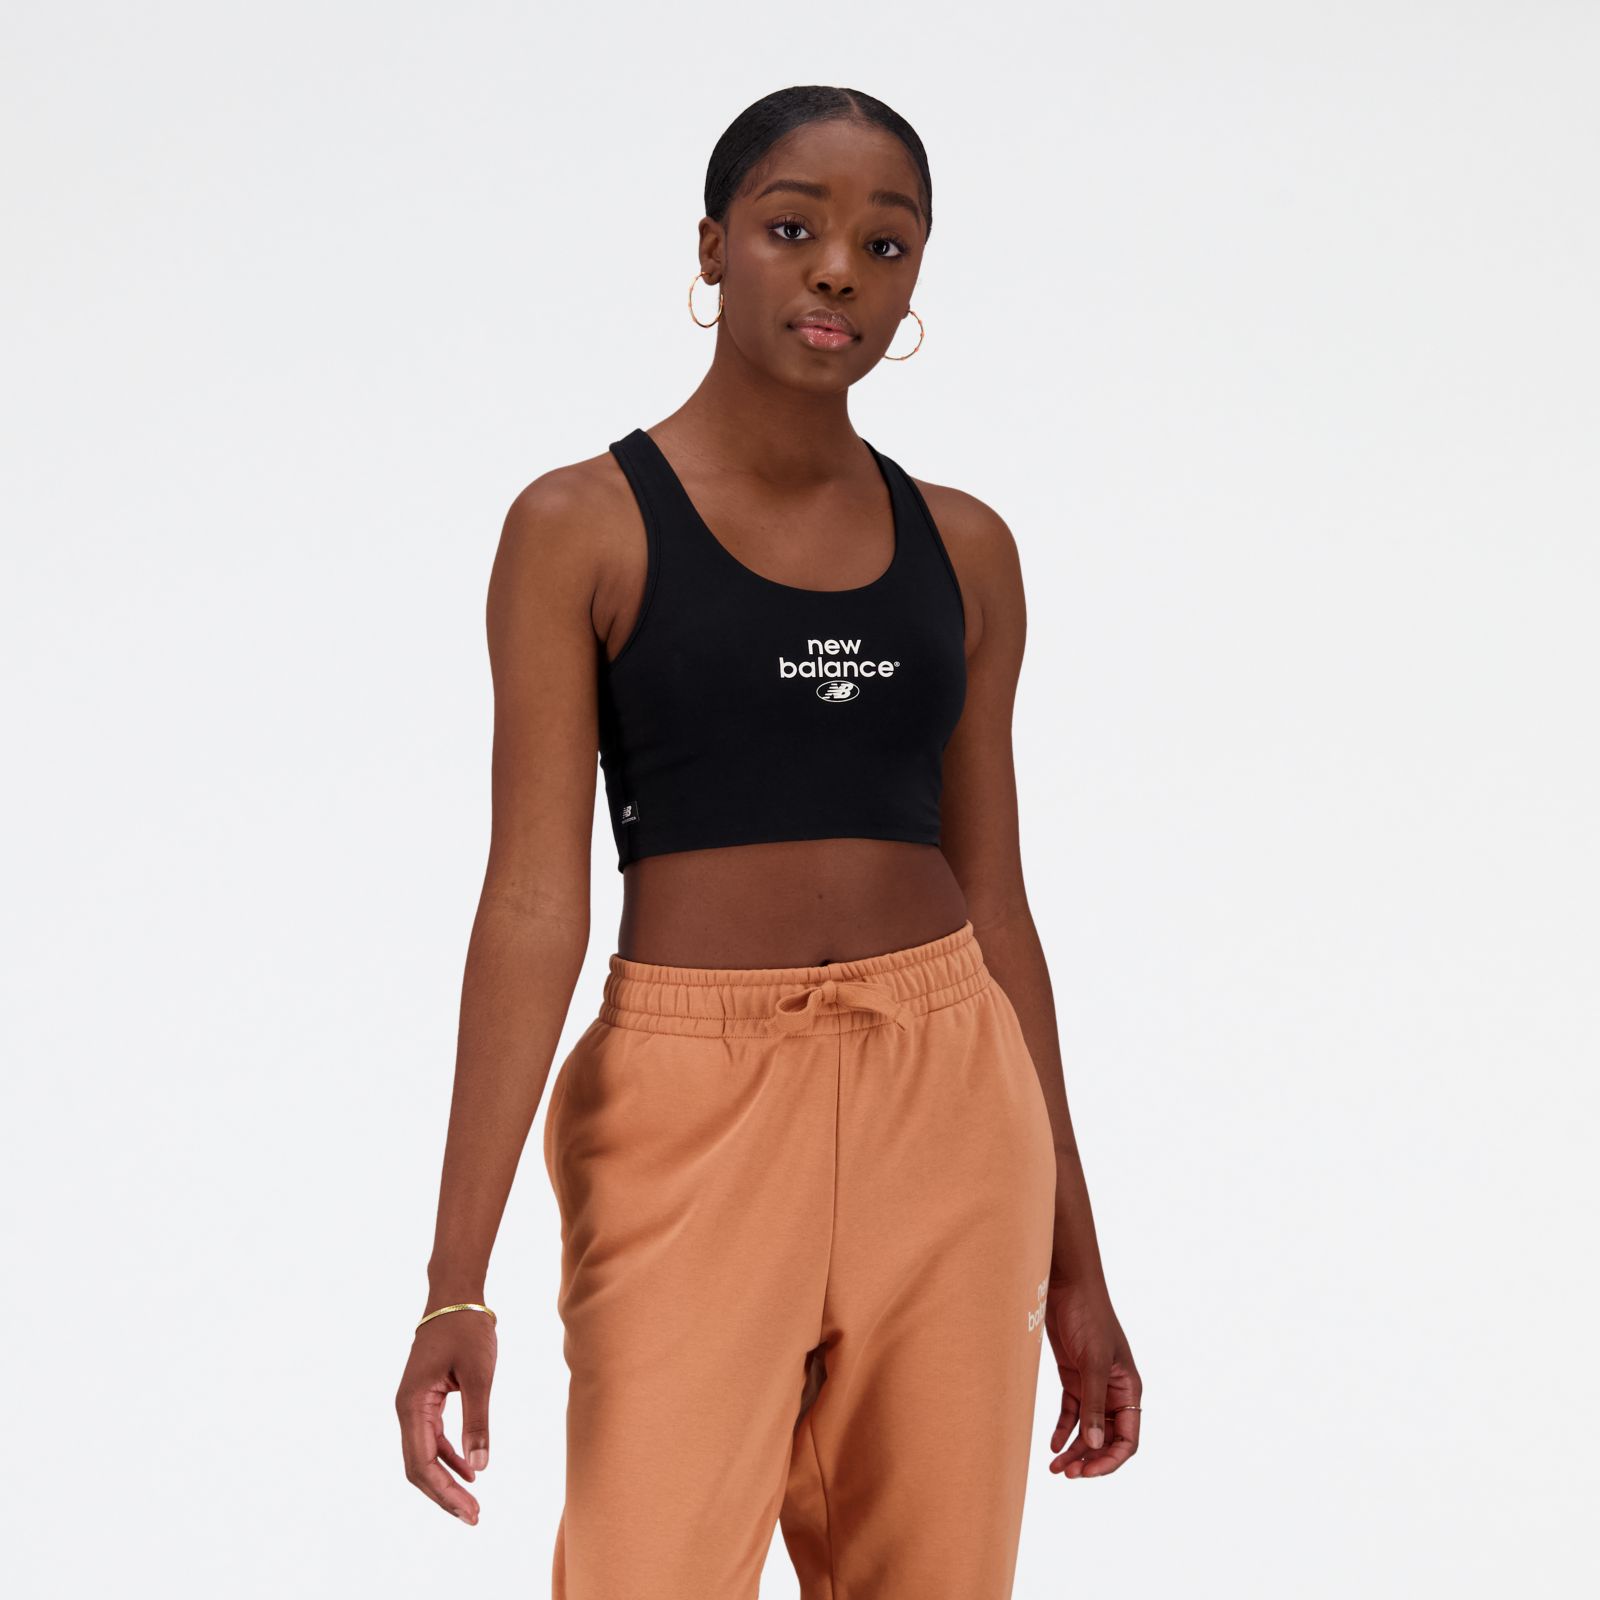 New Balance Women's Essentials Reimagined Cotton Spandex Bra Top